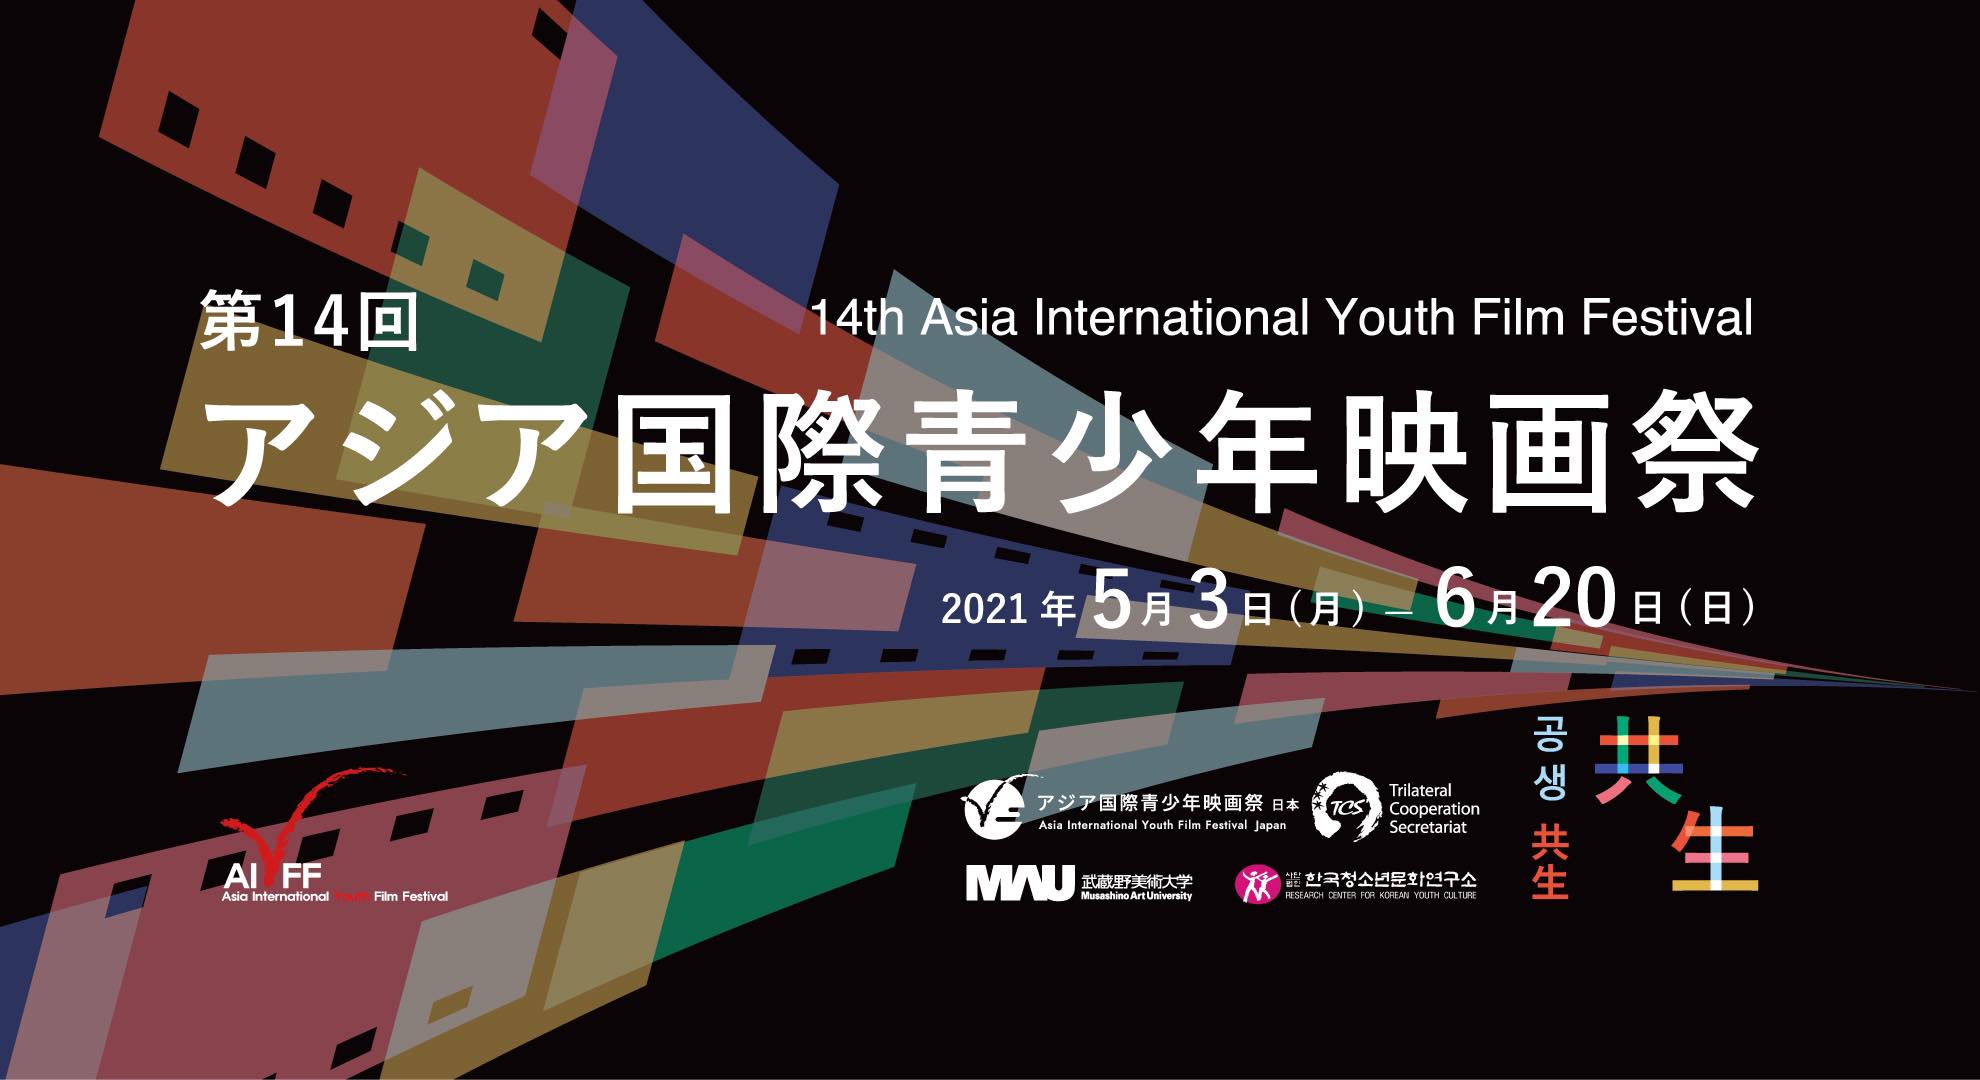 明日3日第14回アジア国際青少年映画祭がスタートします‼